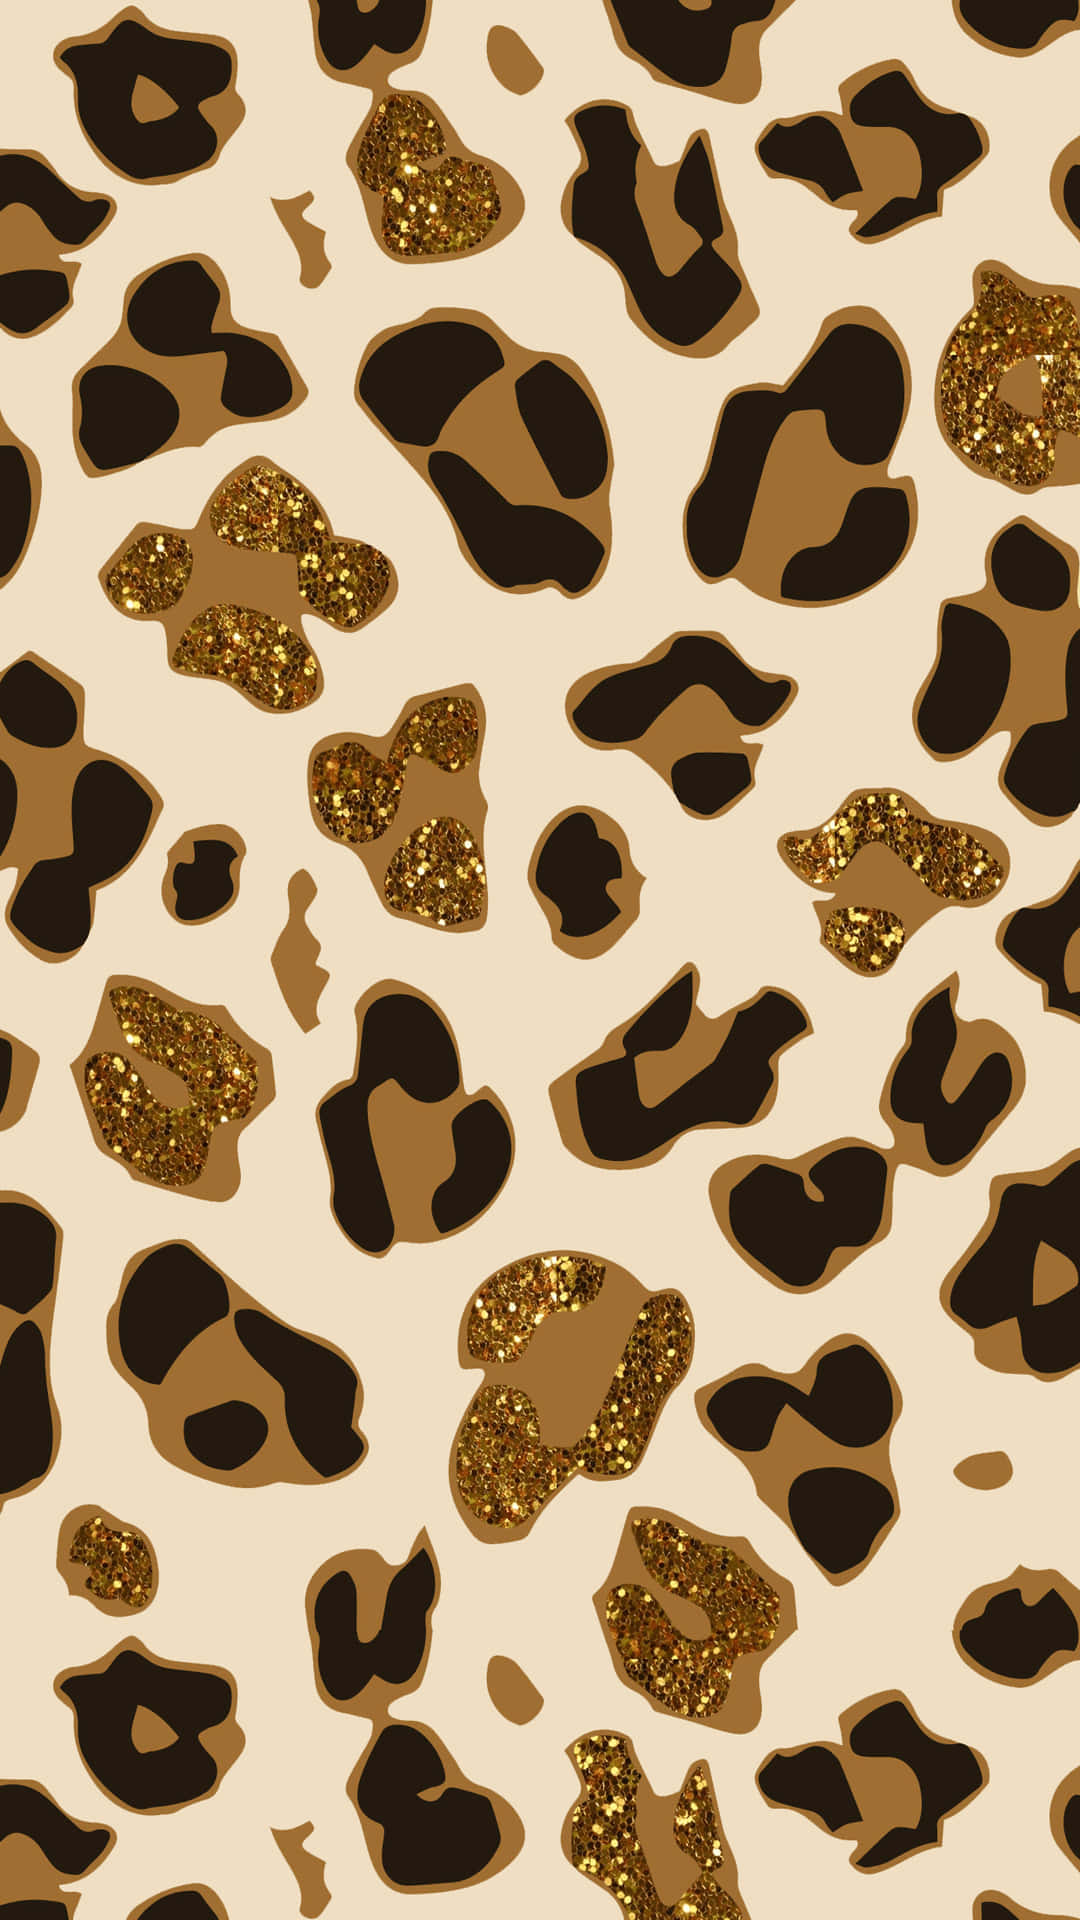 Dyreprint Leopard skinnende tekstur udseende for et moderne, sofistikeret udseende. Wallpaper